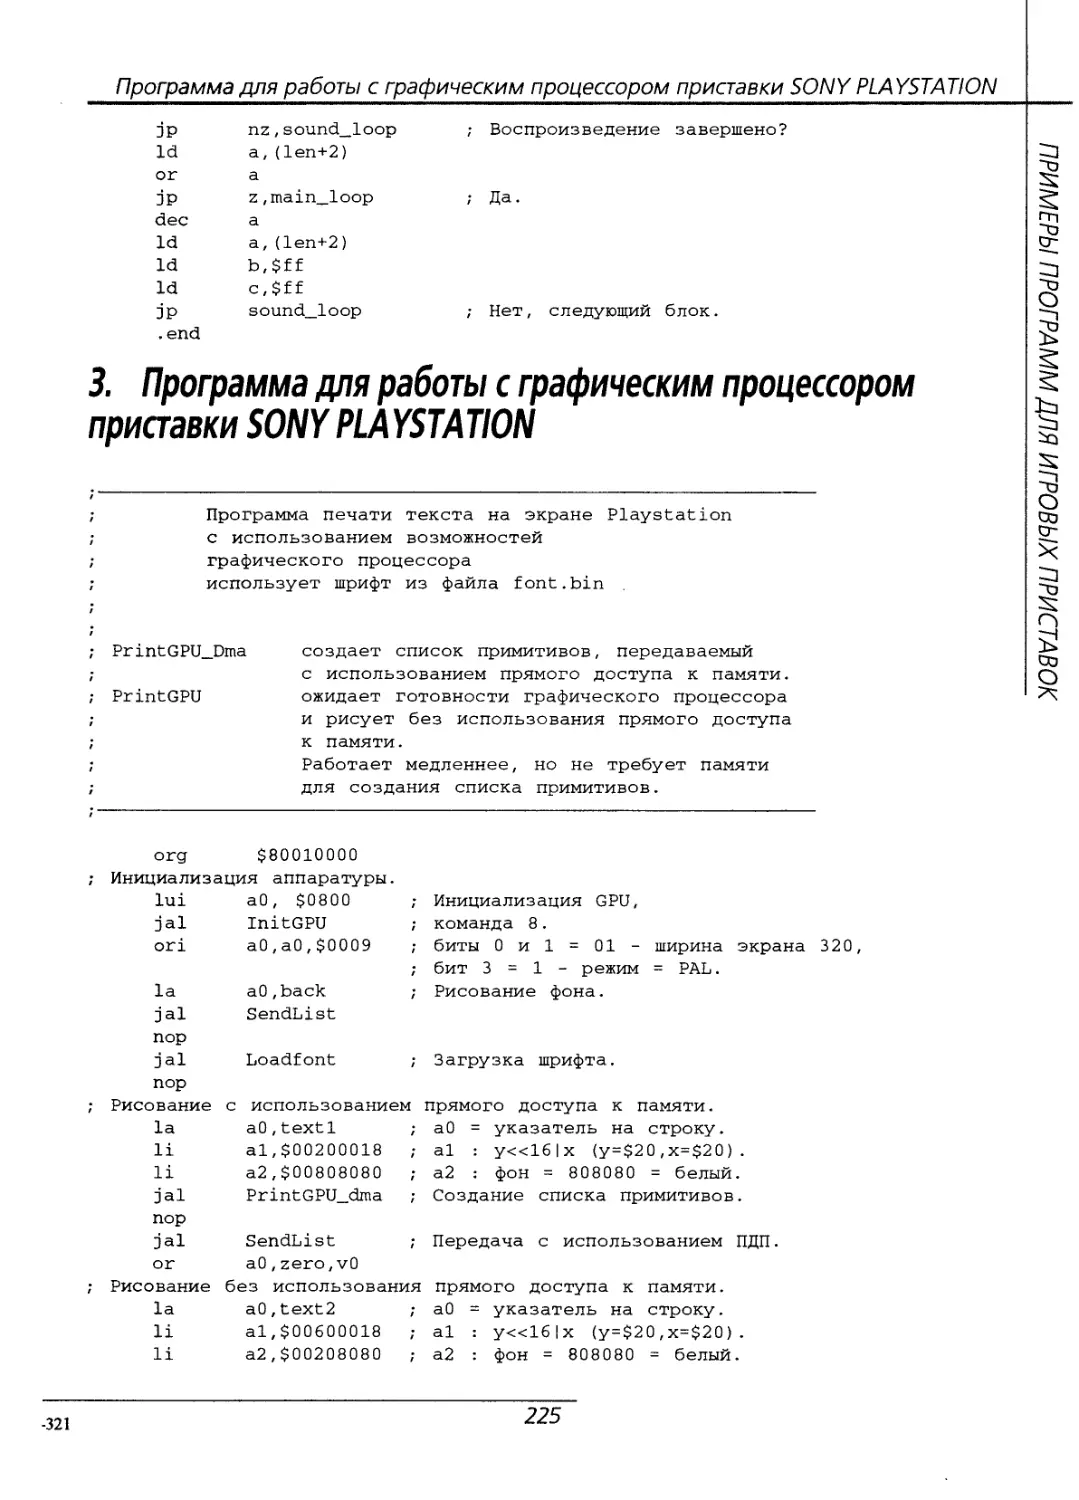 3. Программа для работы с графическим процессором приставки SONY PLAYSTATION